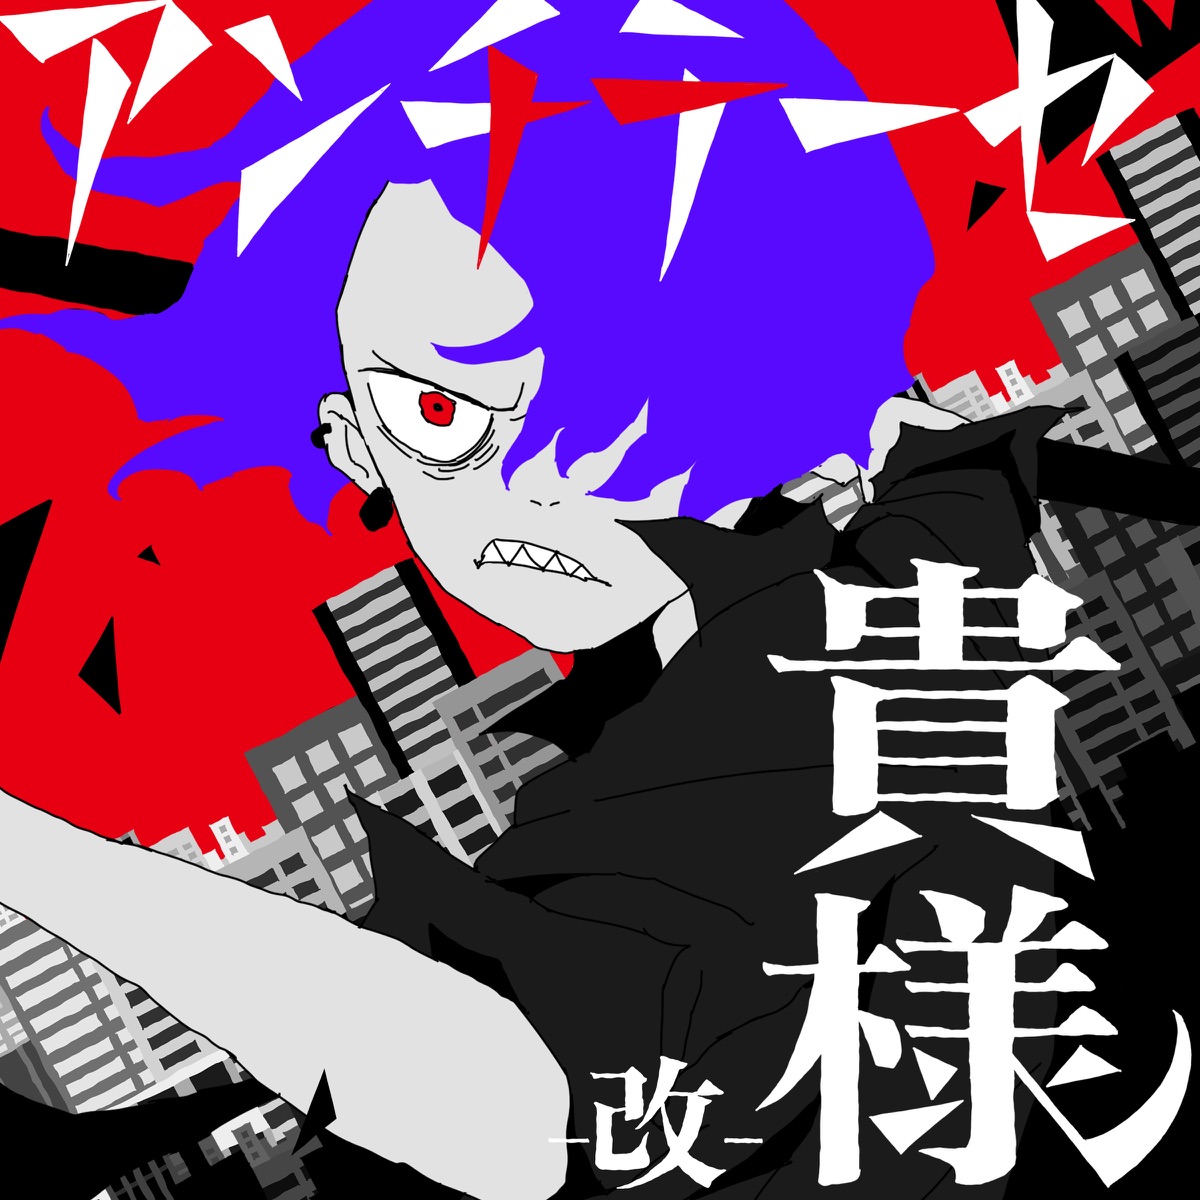 Cover art for『syudou - Antithesis Kisama - kai -』from the release『Antithesis Kisama - kai -』